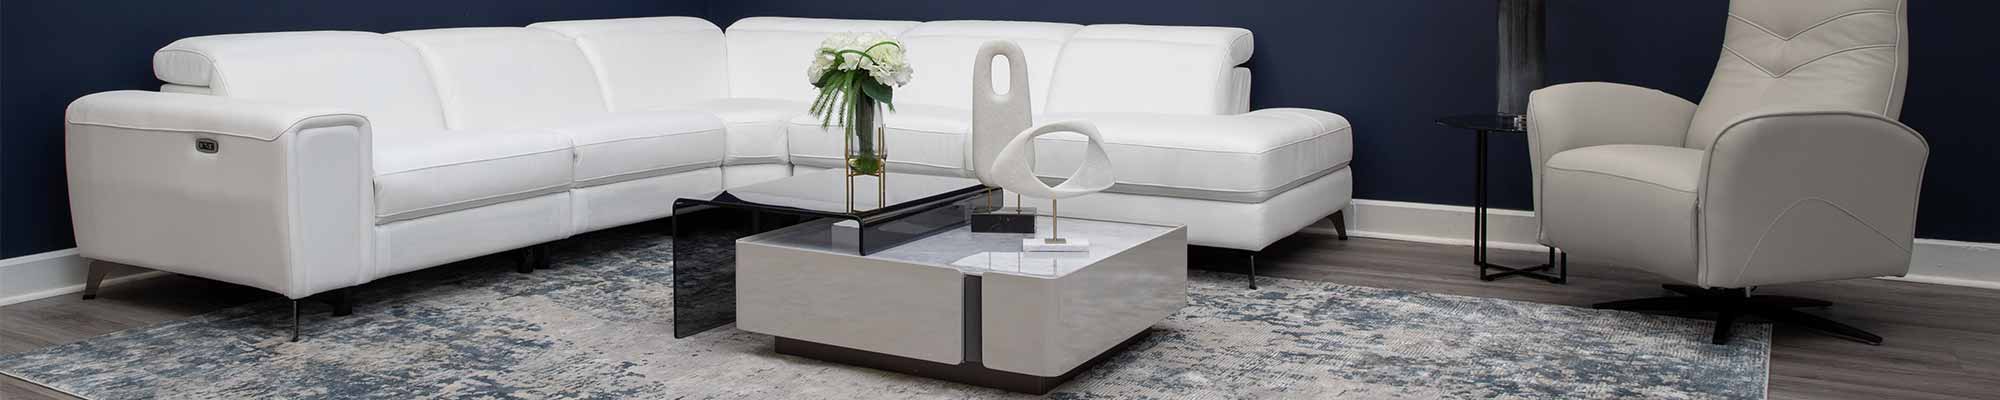 Sleek Living Room Image for Modern Furniture Blog focused on Interior Design Tips and Furniture Trends